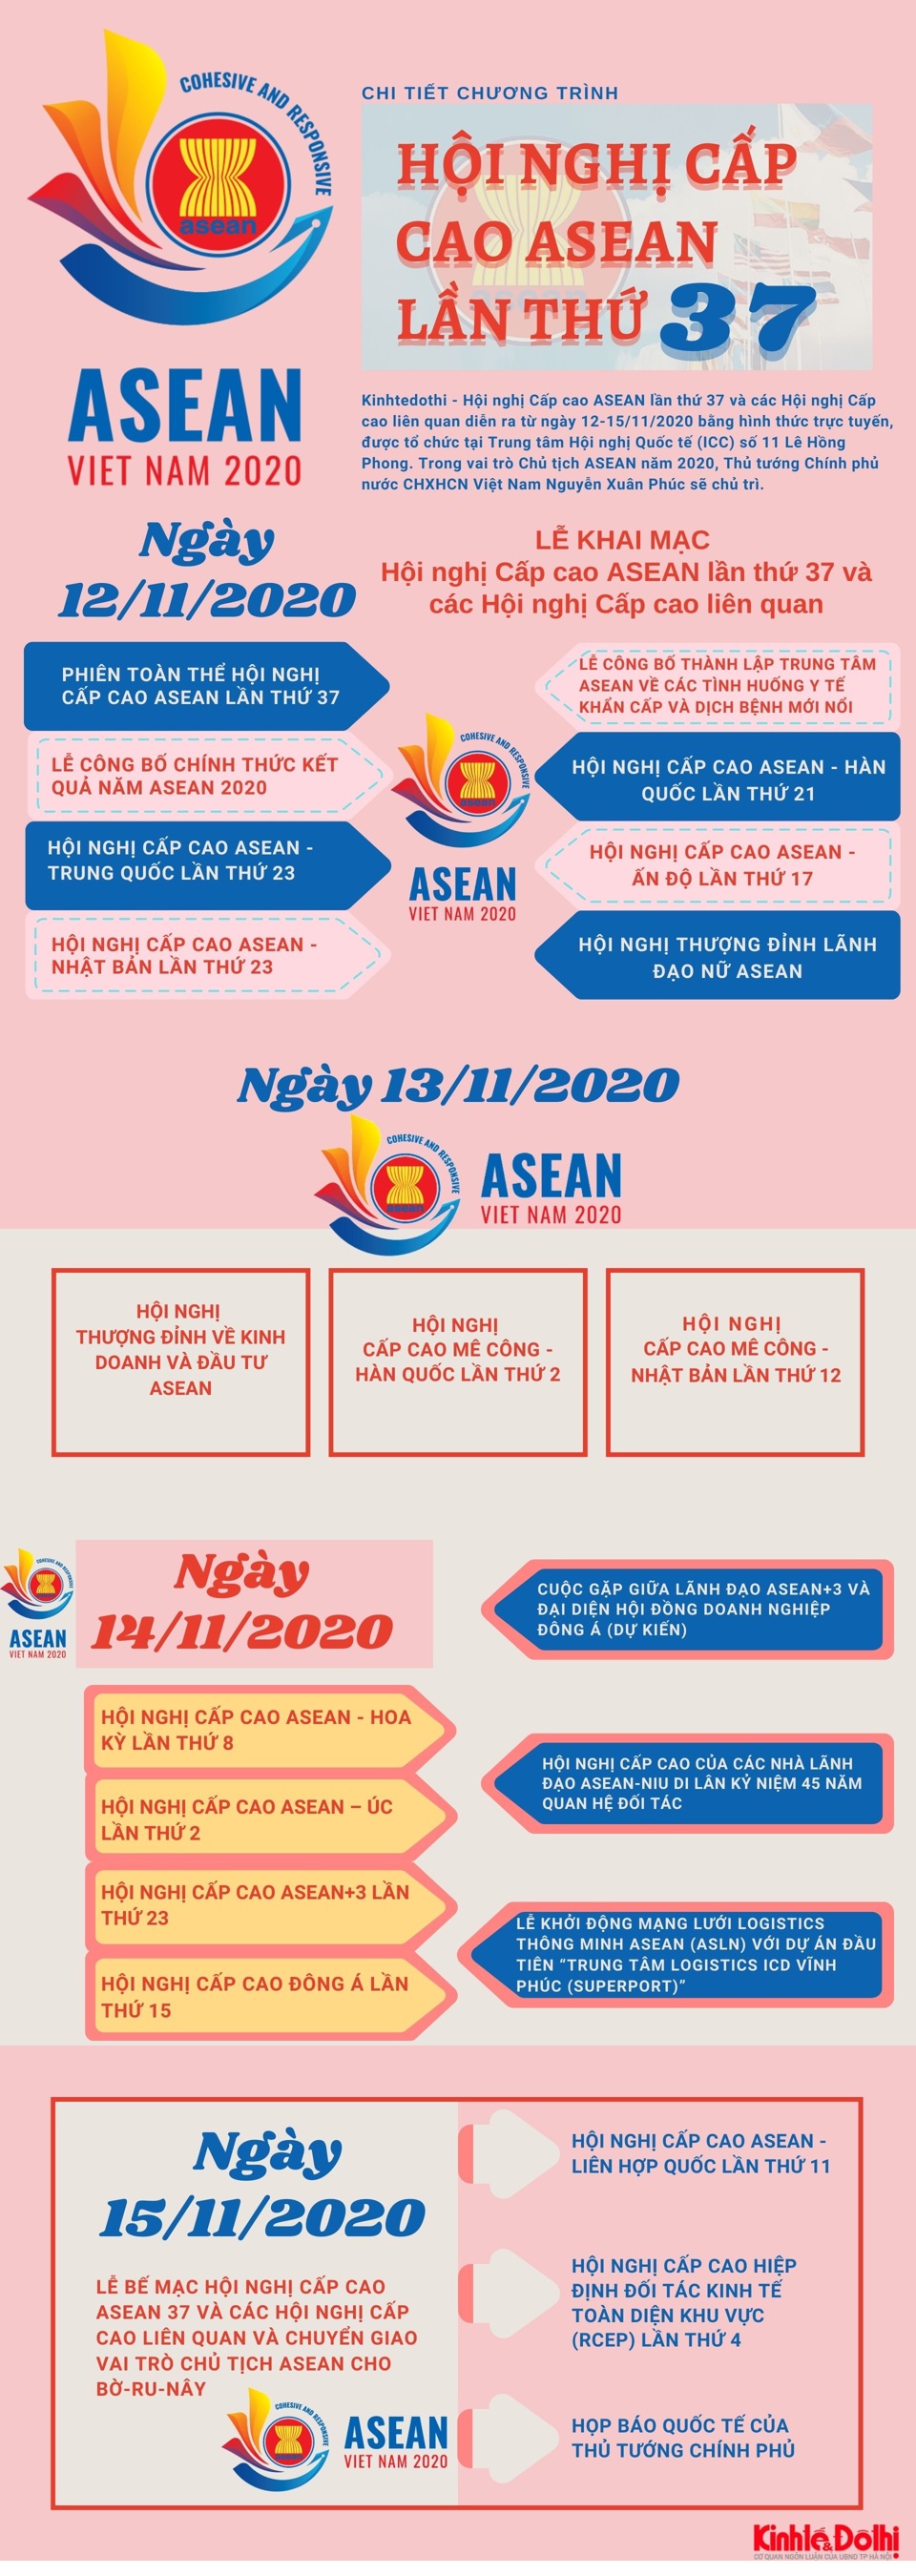 [Infographic] Chi tiết chương trình Hội nghị Cấp cao ASEAN lần thứ 37 và các Hội nghị Cấp cao liên quan - Ảnh 1